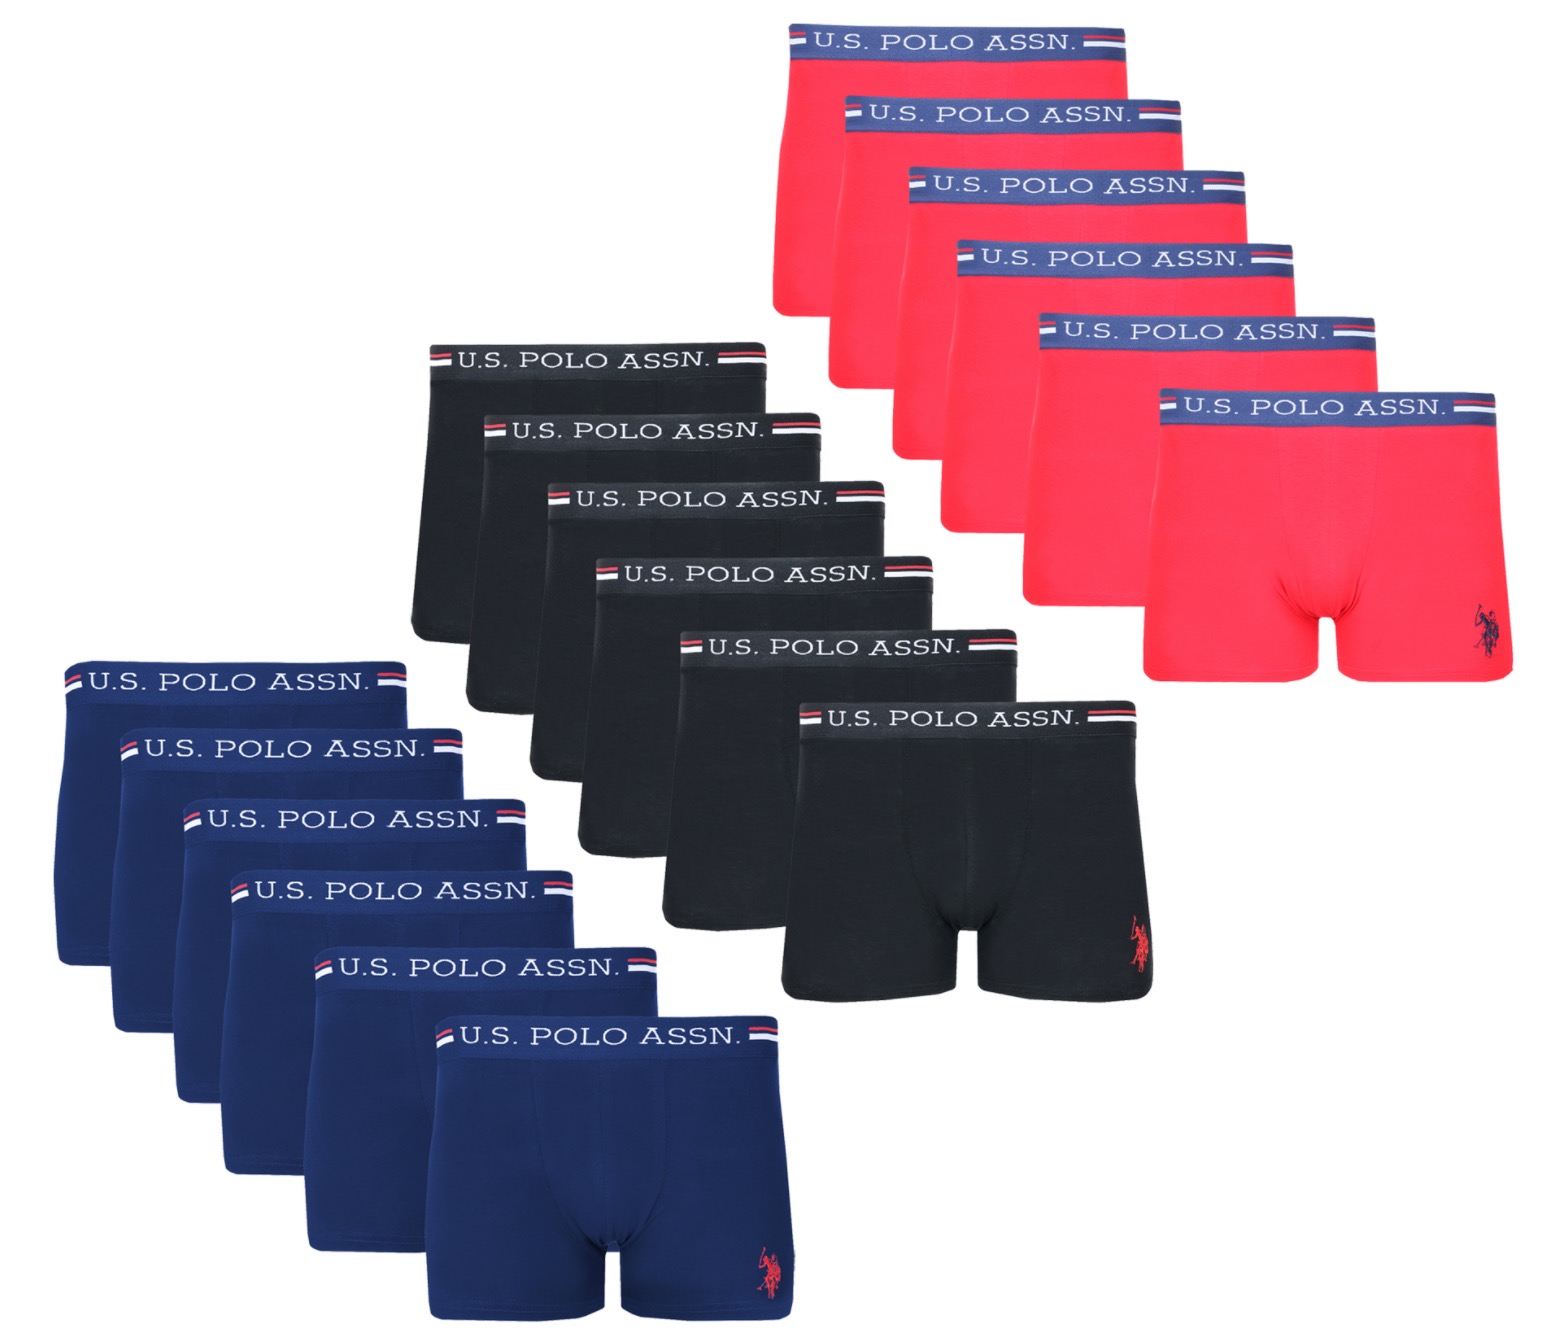 6er-Pack U.S. POLO ASSN. Premium Cotton Herren Boxershorts für nur 27,99 Euro